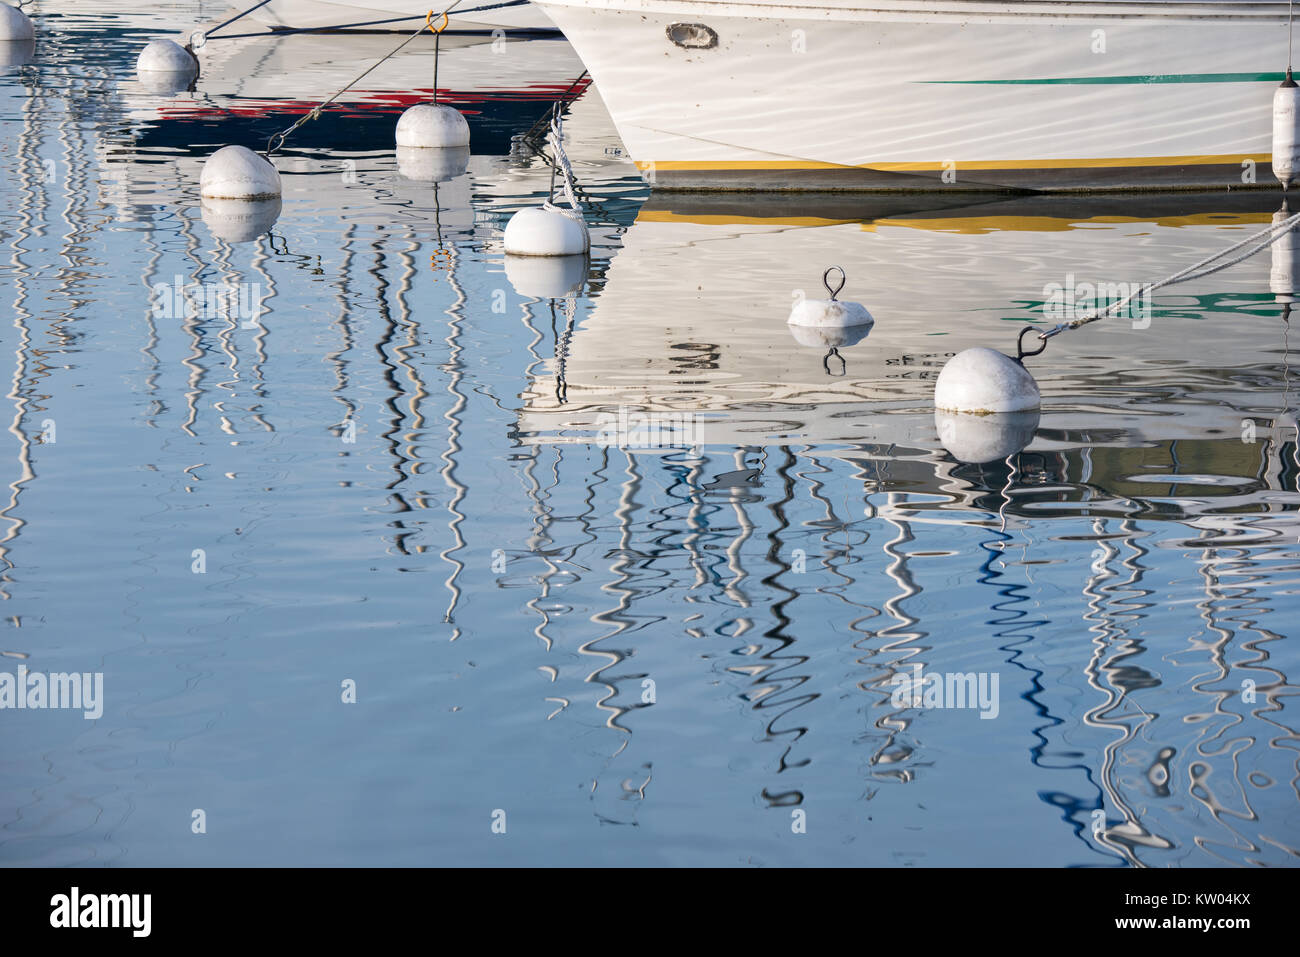 Le riflessioni di stuoie e gli scafi delle barche sul lago di Ginevra, Svizzera Foto Stock